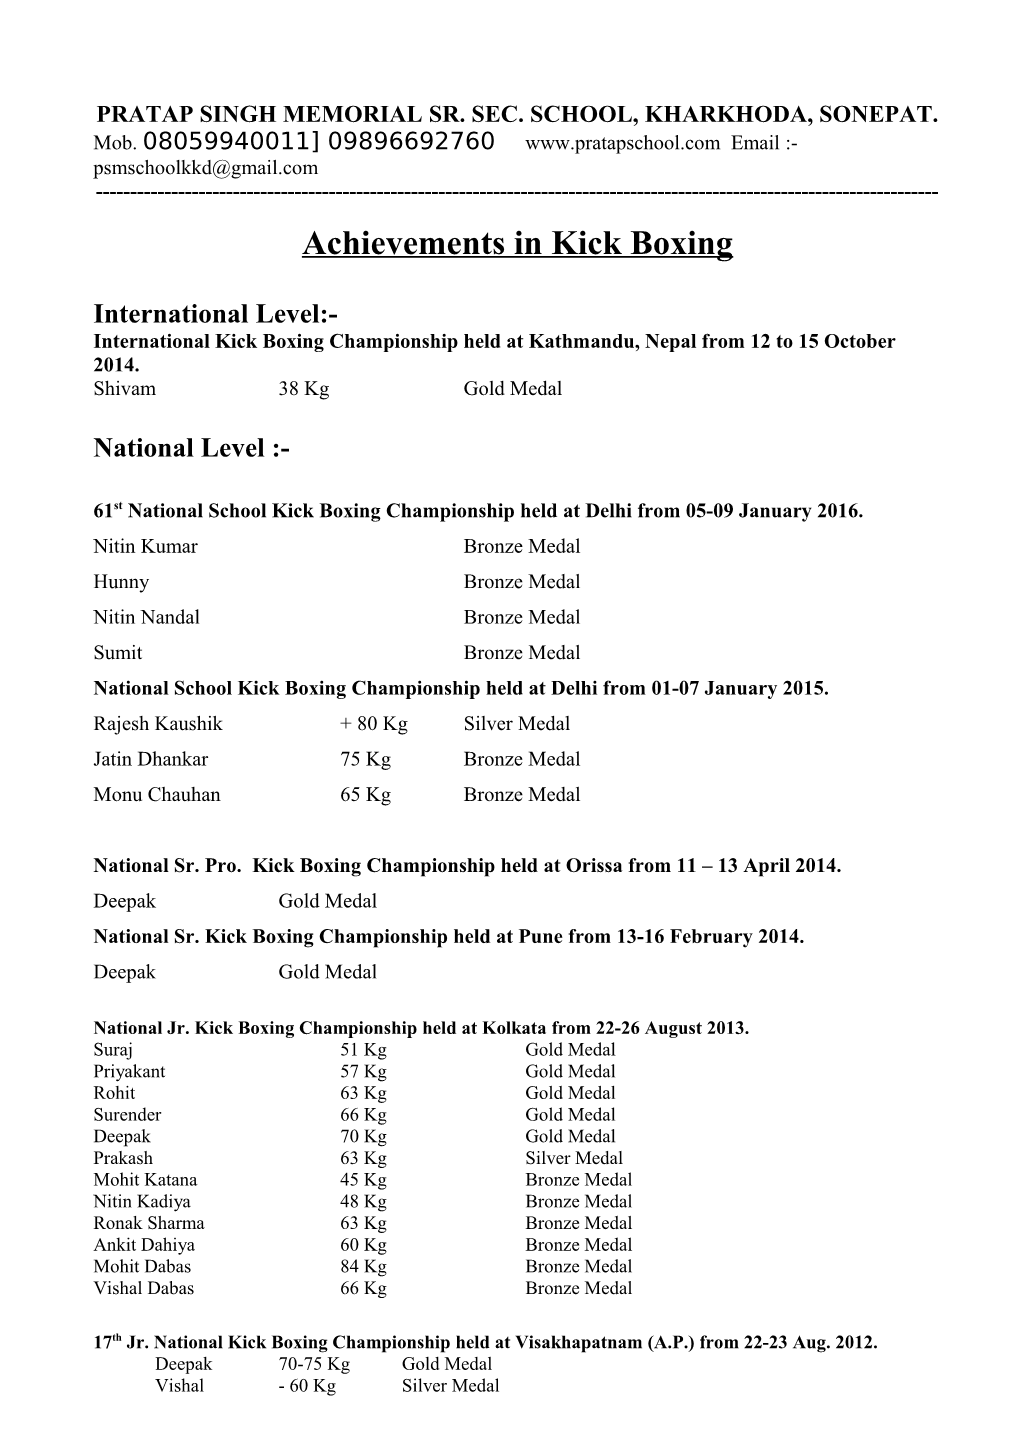 Achievements in Karate Championship